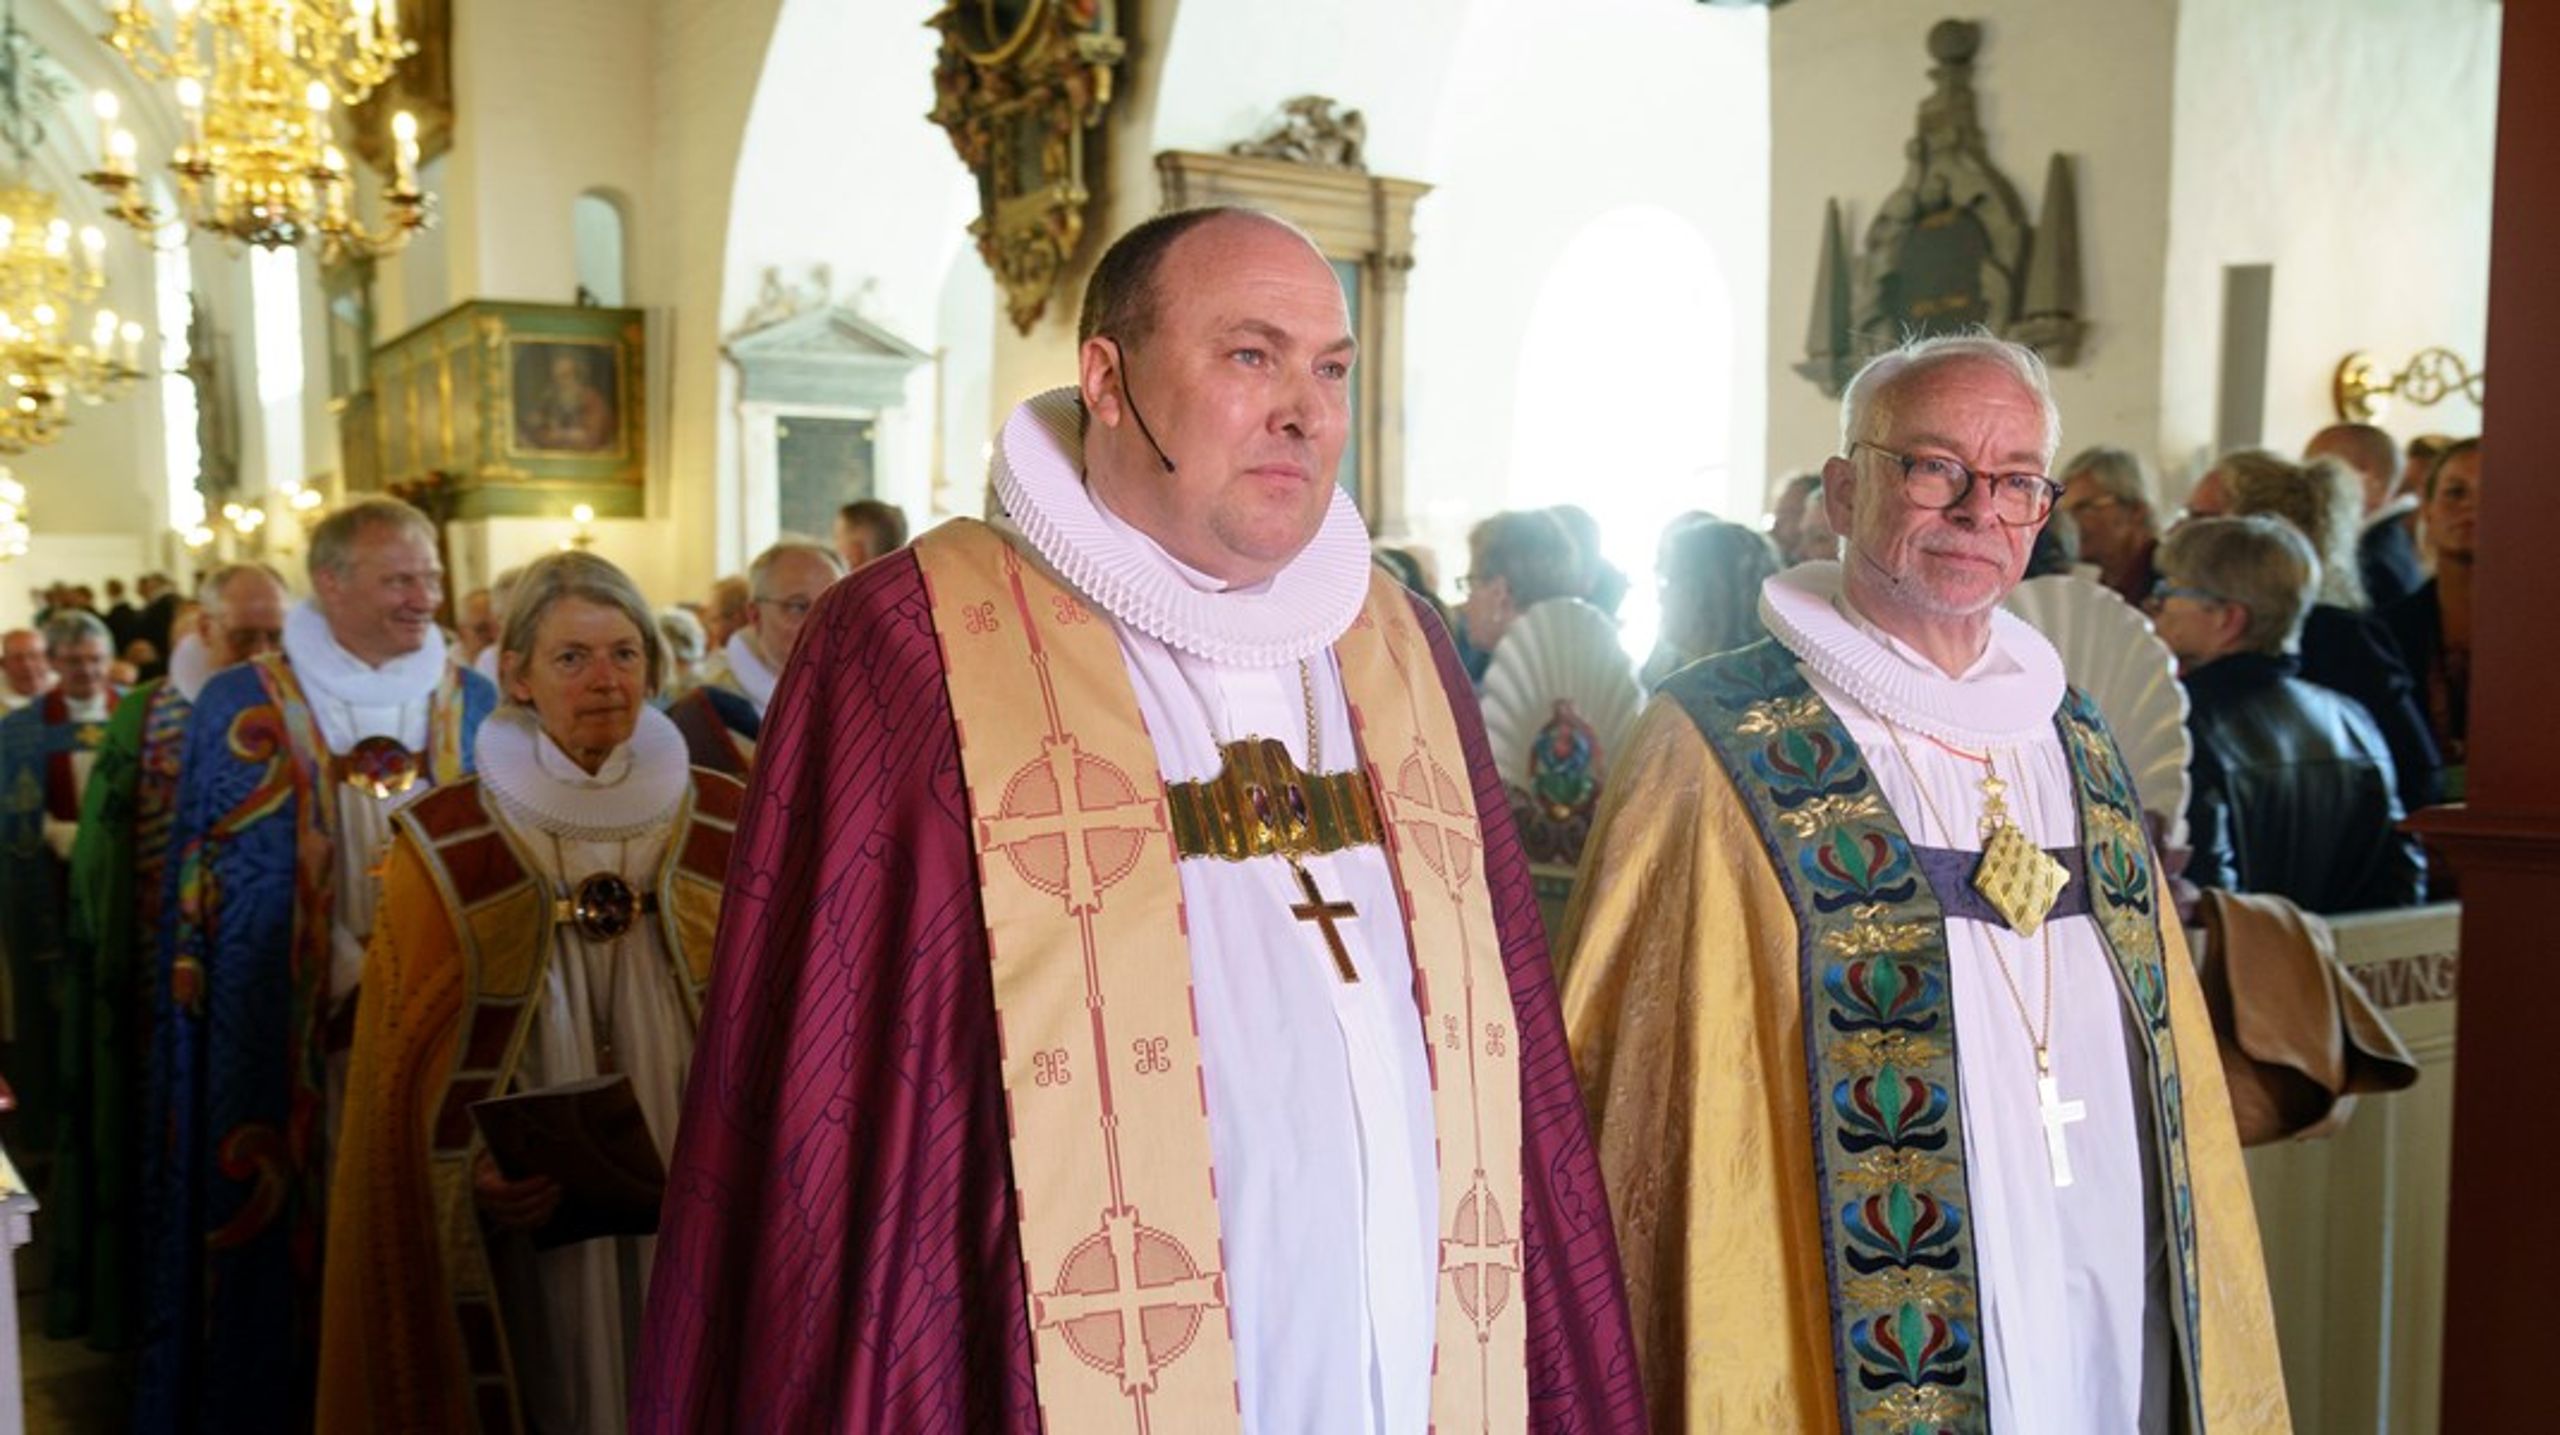 Biskop i Aalborg Stift Thomas Reinholdt Rasmussen (i midten) er formand i den nye dåbskommission. Også Københavns biskop Peter Skov-Jakobsen (til højre) har fået plads i kommissionen.